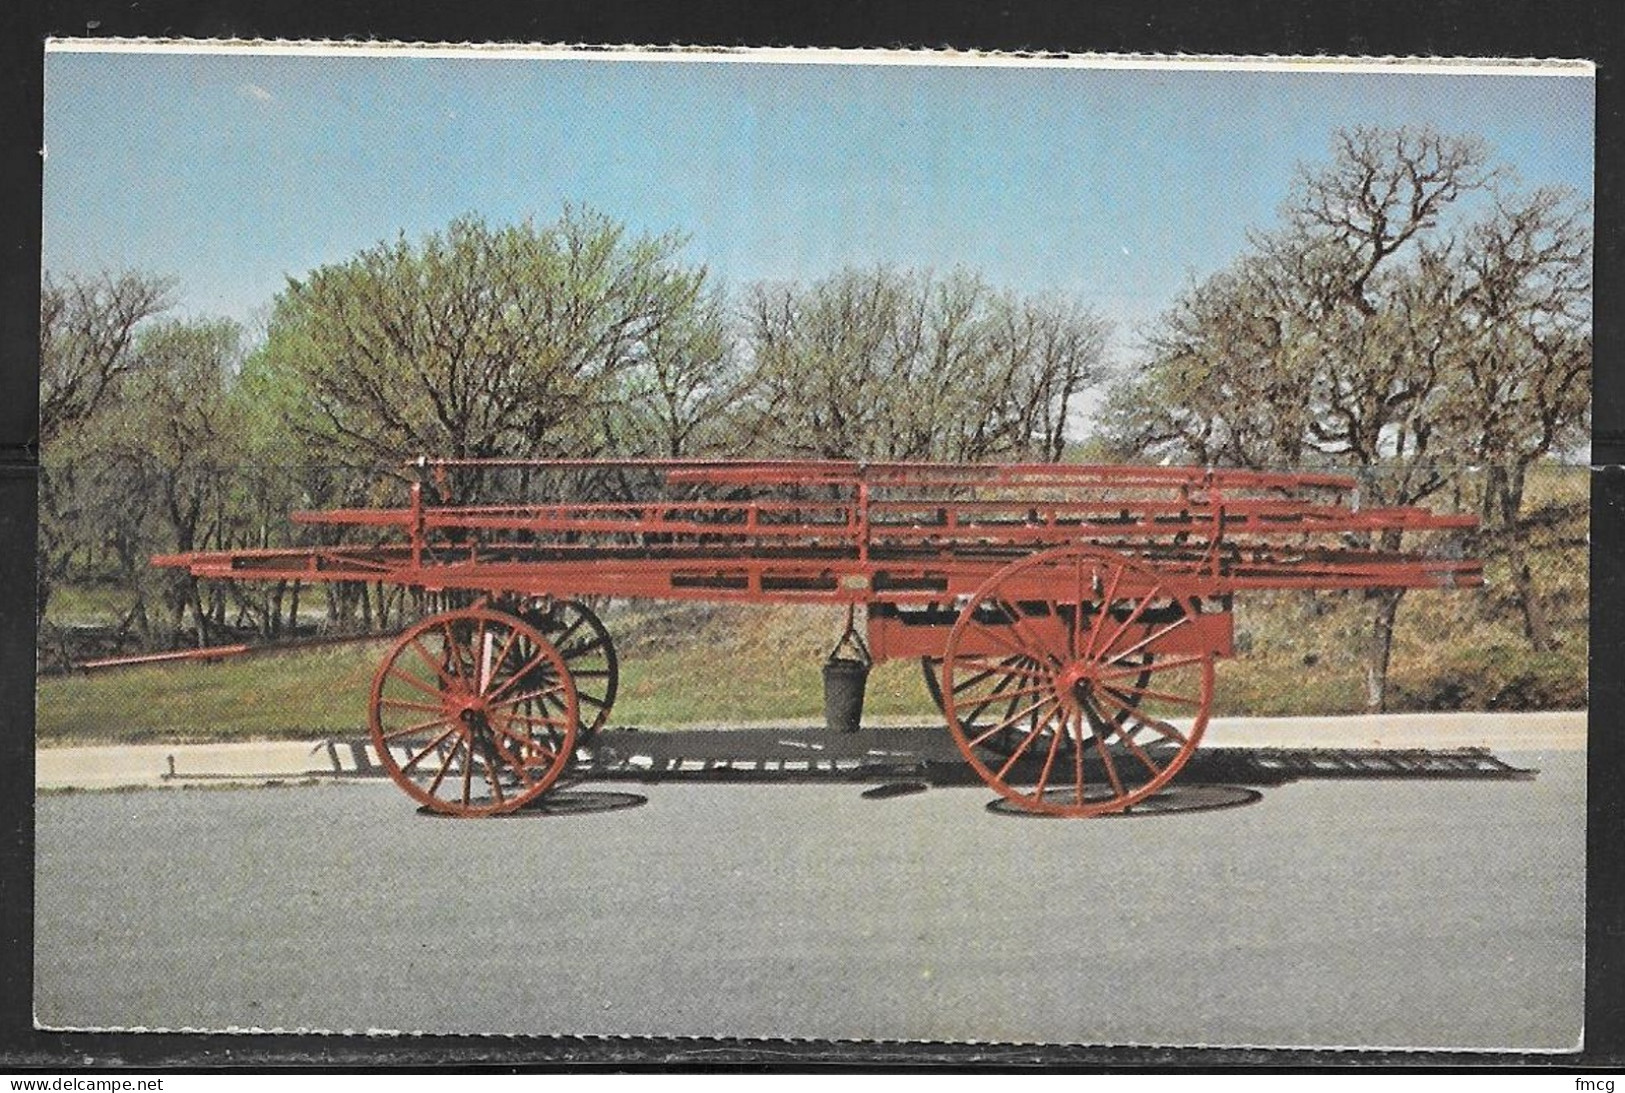 Okla. Firefighter Museum, 1900 Seagraves Ladder Cart, Unused - Oklahoma City